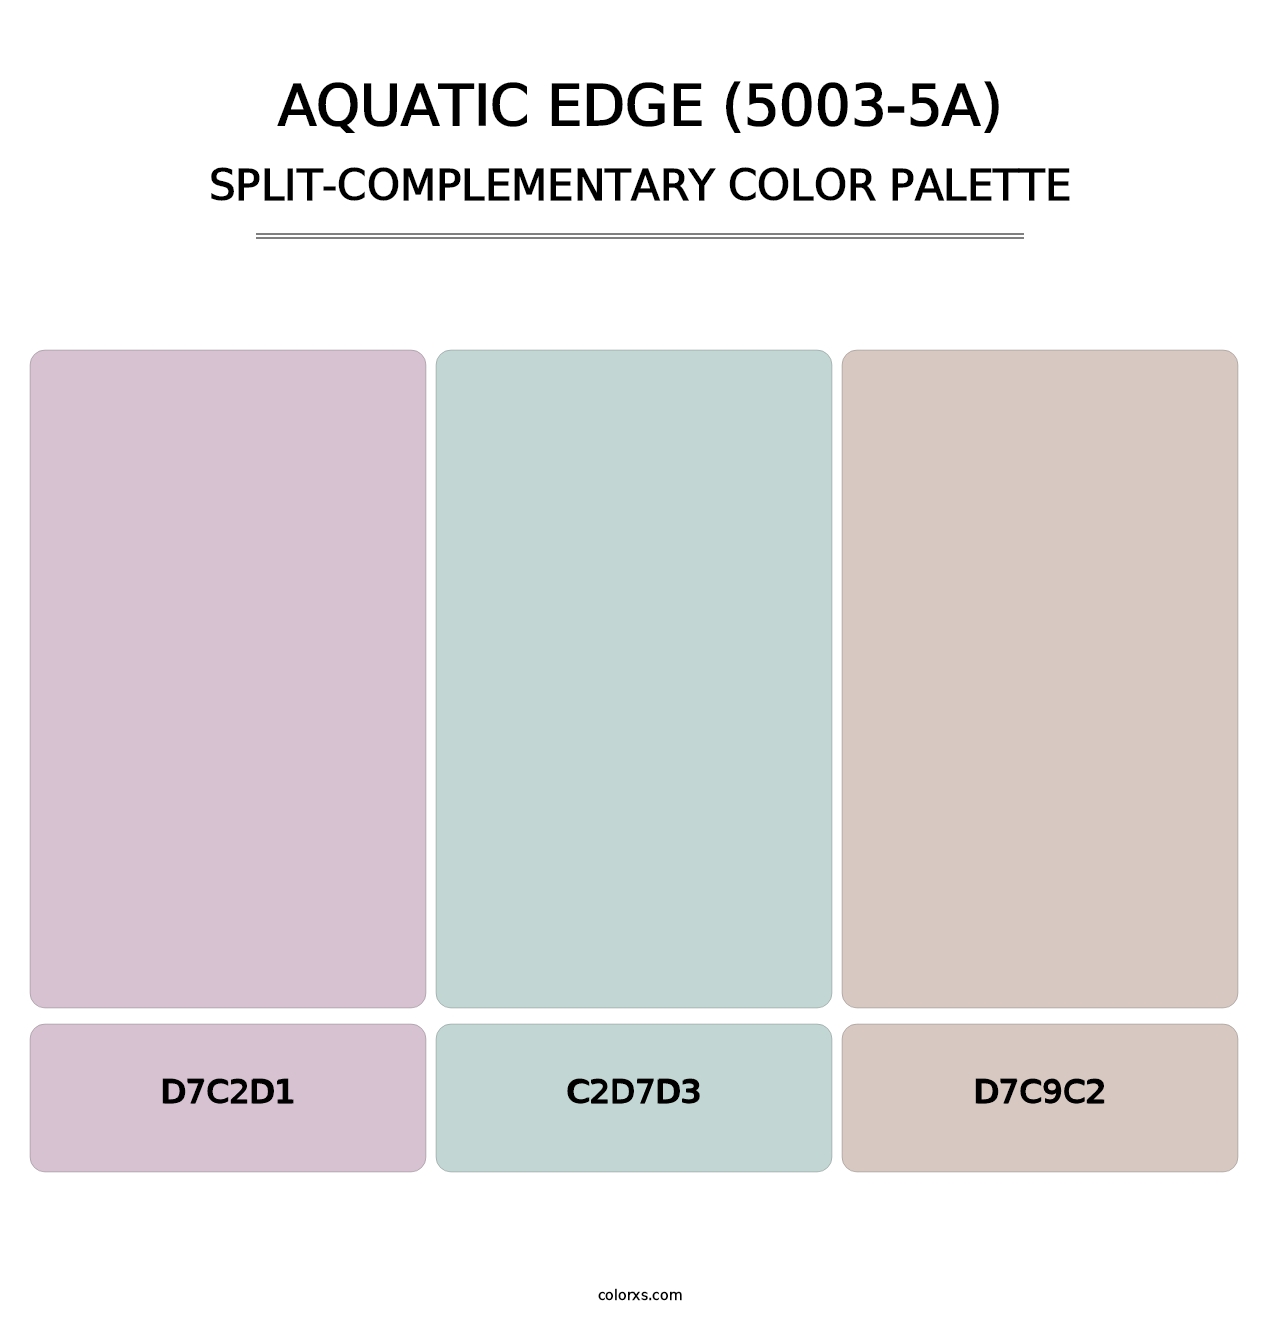 Aquatic Edge (5003-5A) - Split-Complementary Color Palette